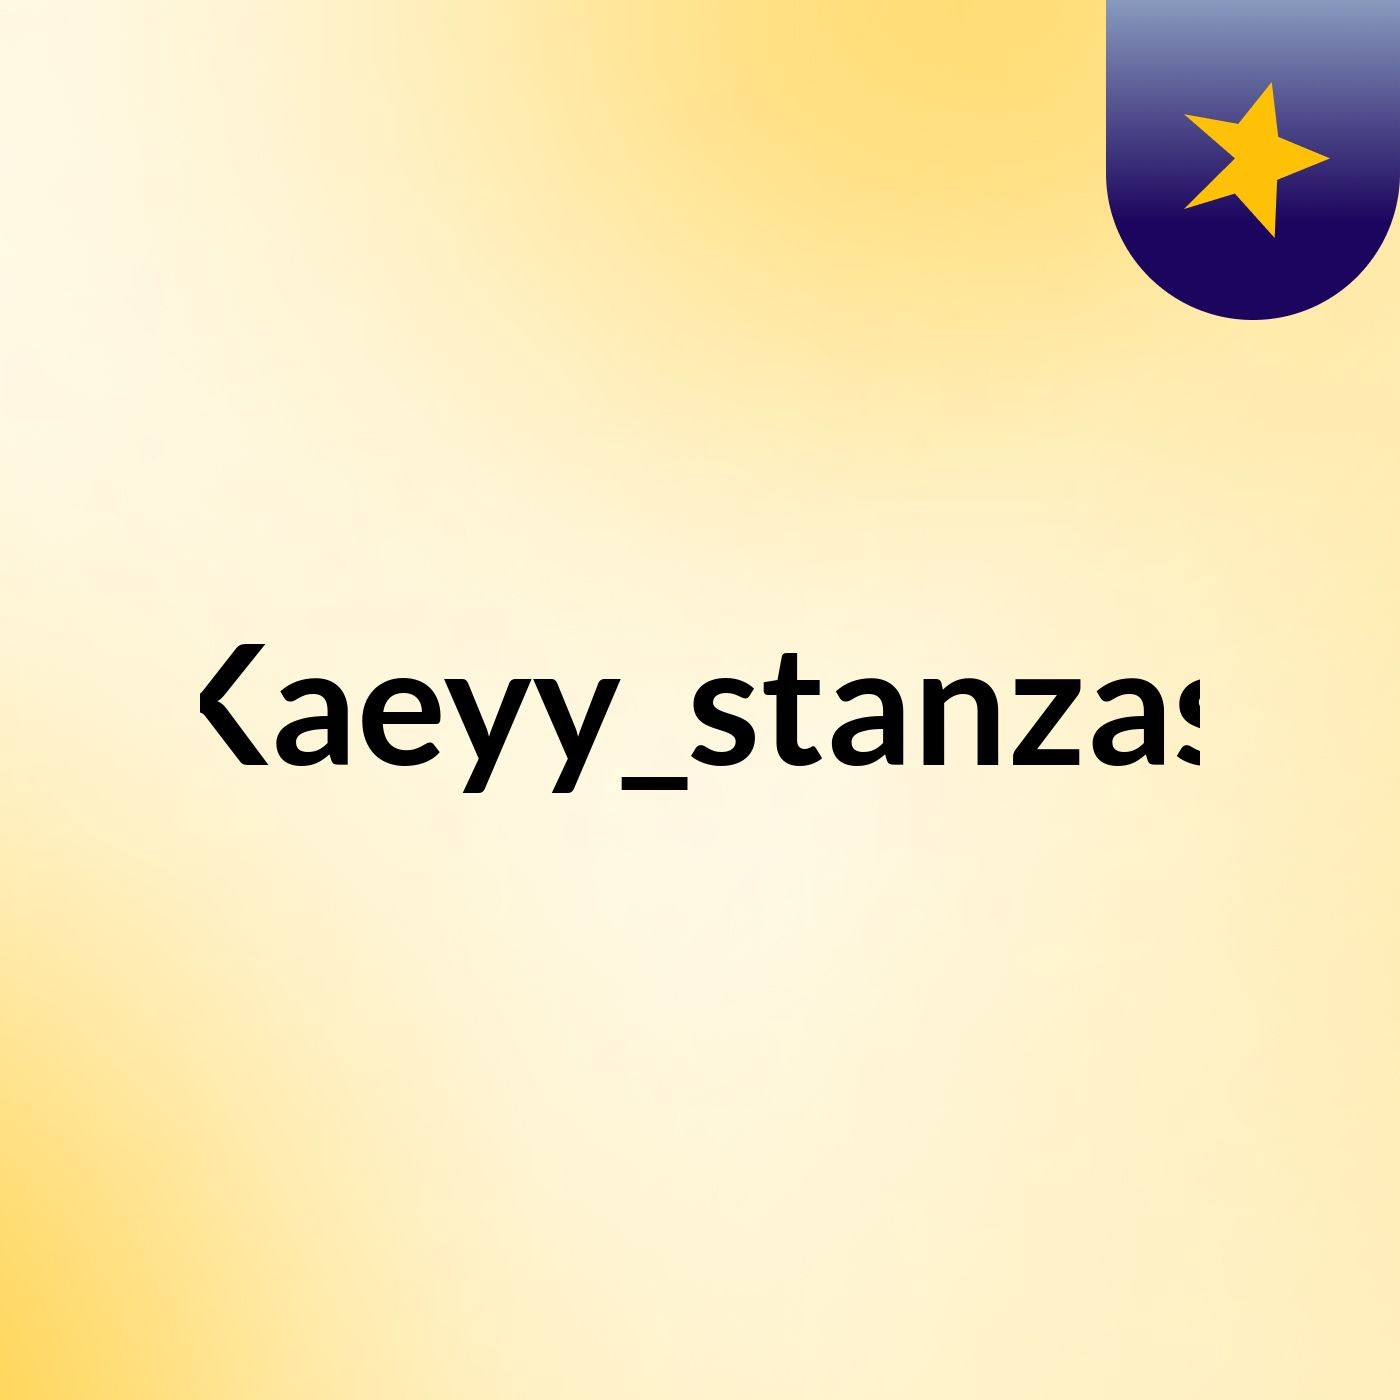 Kaeyy_stanzas